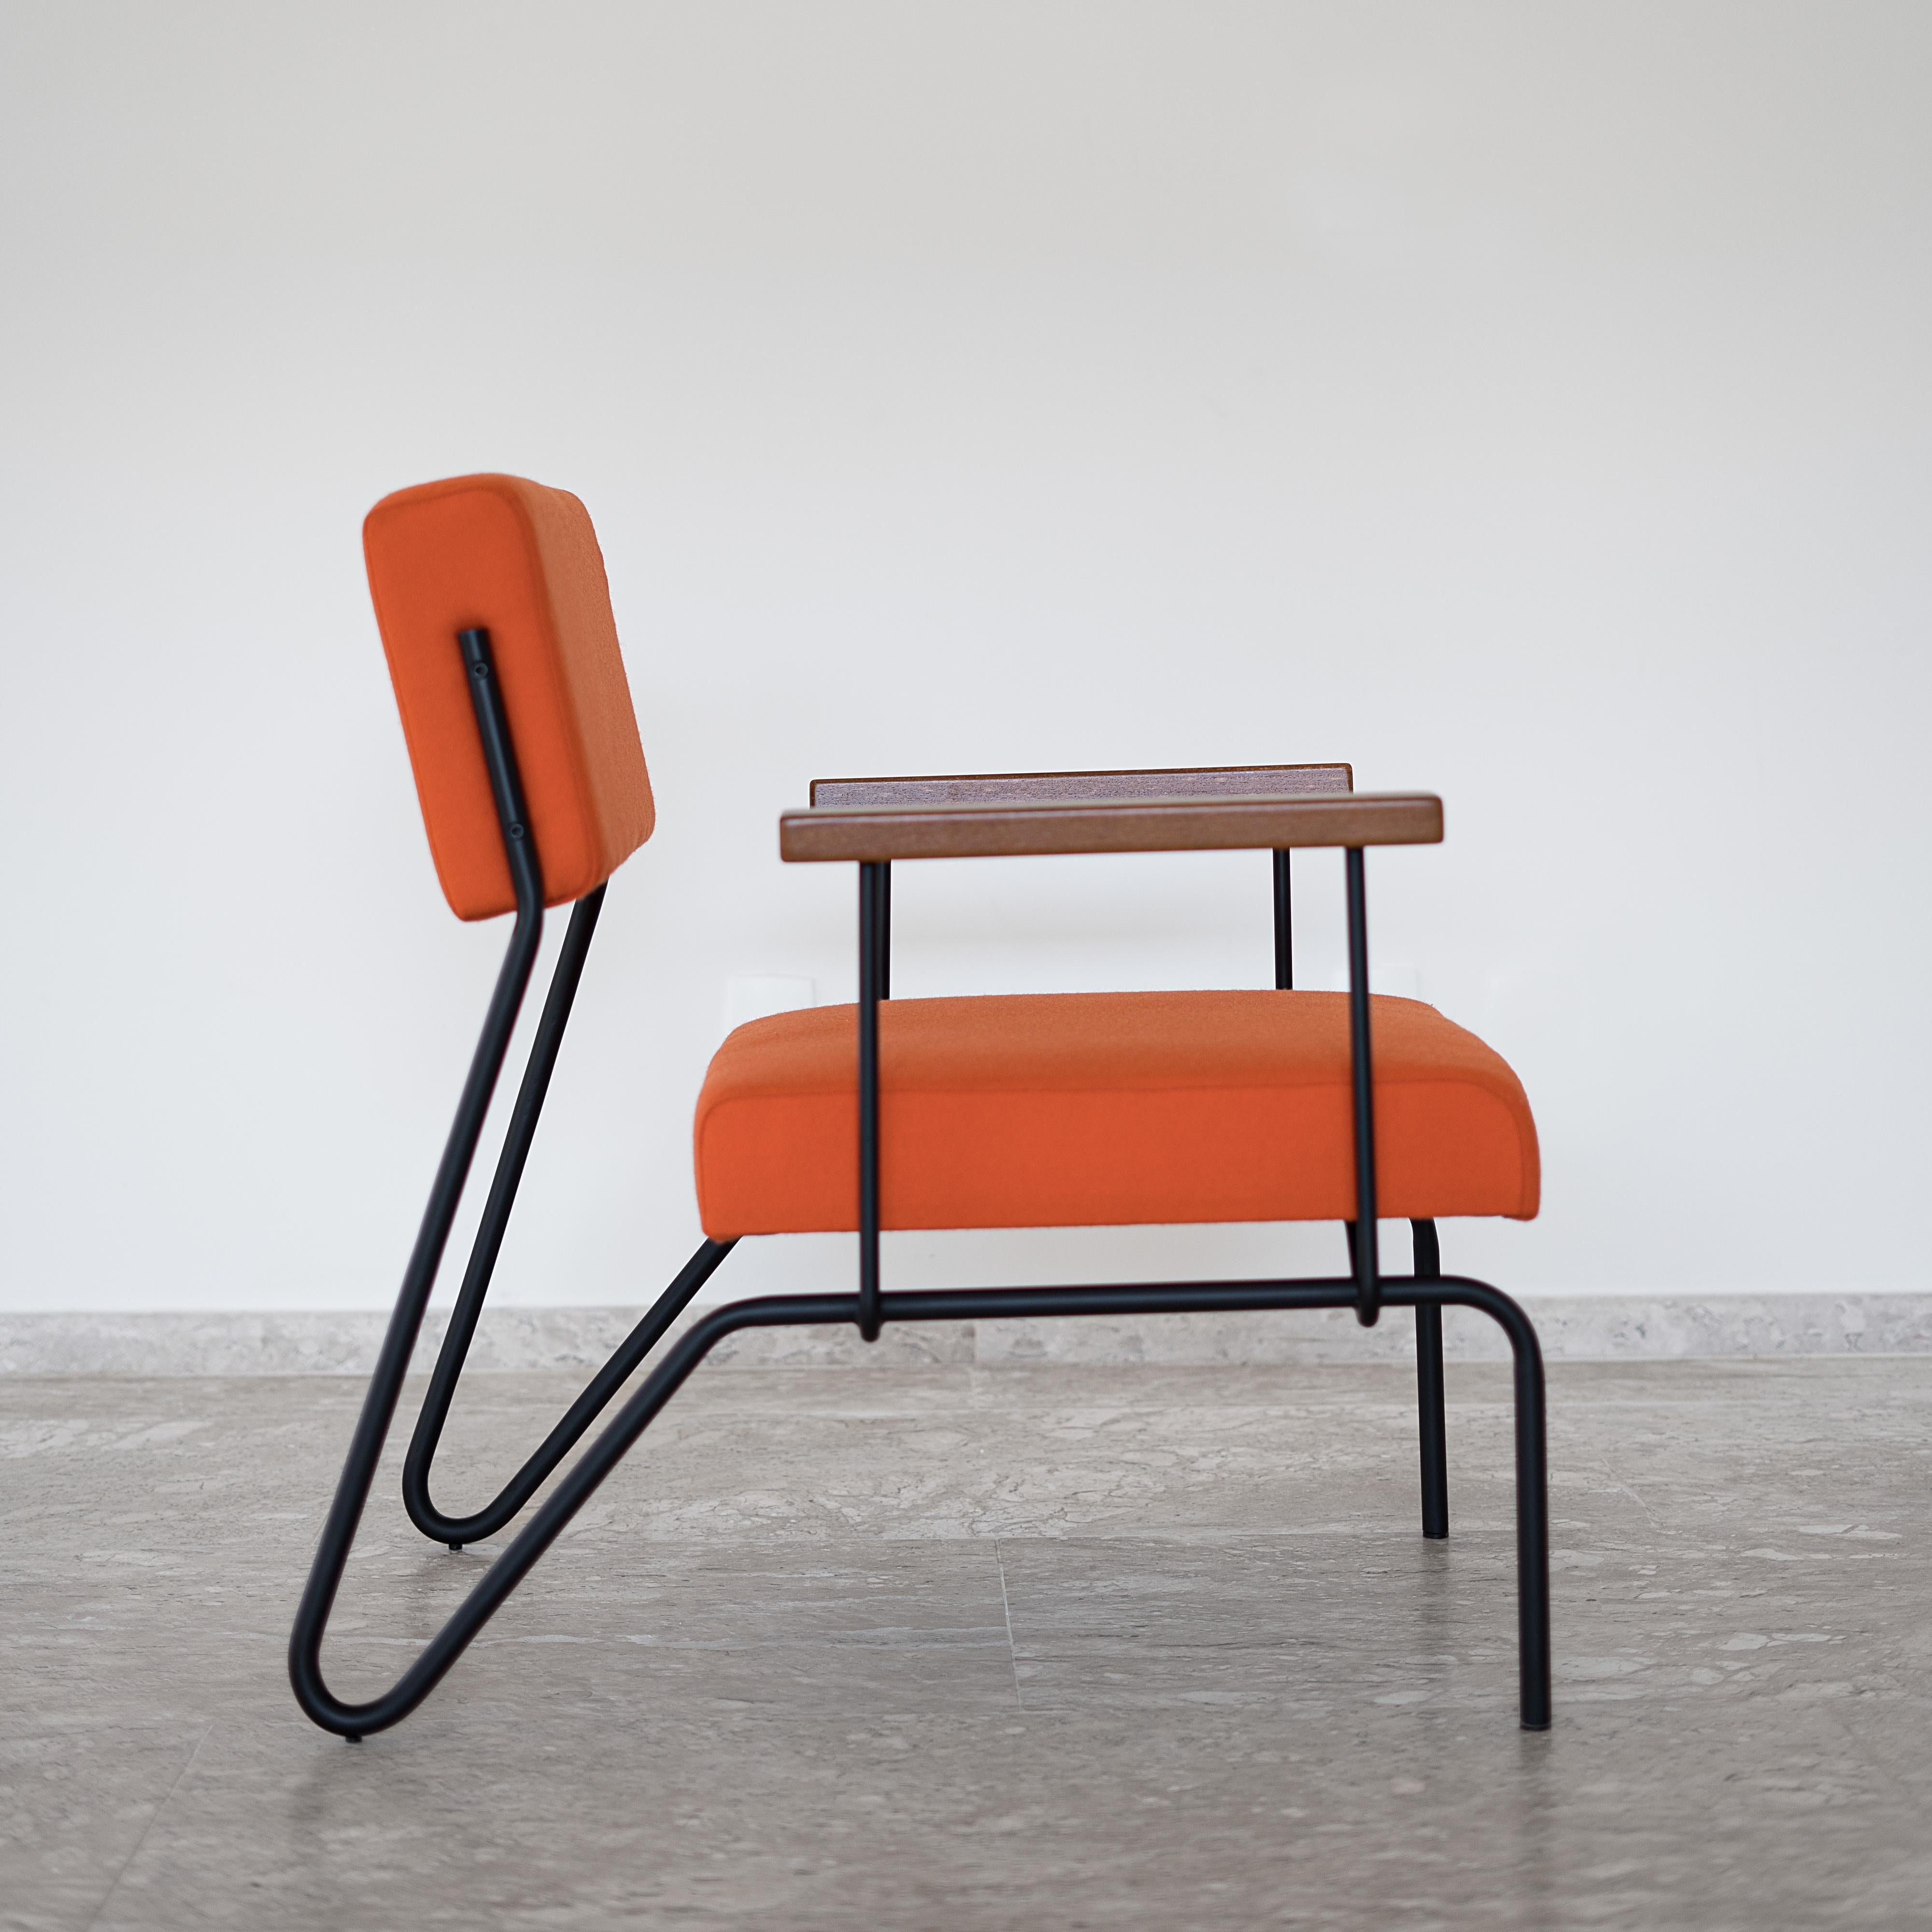 Dieser preisgekrönte minimalistische Sessel aus Stahl, Massivholz und Leder ist klassisch und geometrisch gestaltet. 
Die Kontinuität der Strukturlinien suggeriert Fluidität. Die Rückenlehne ermöglicht eine reibungslose Bewegung und hebt sich wie